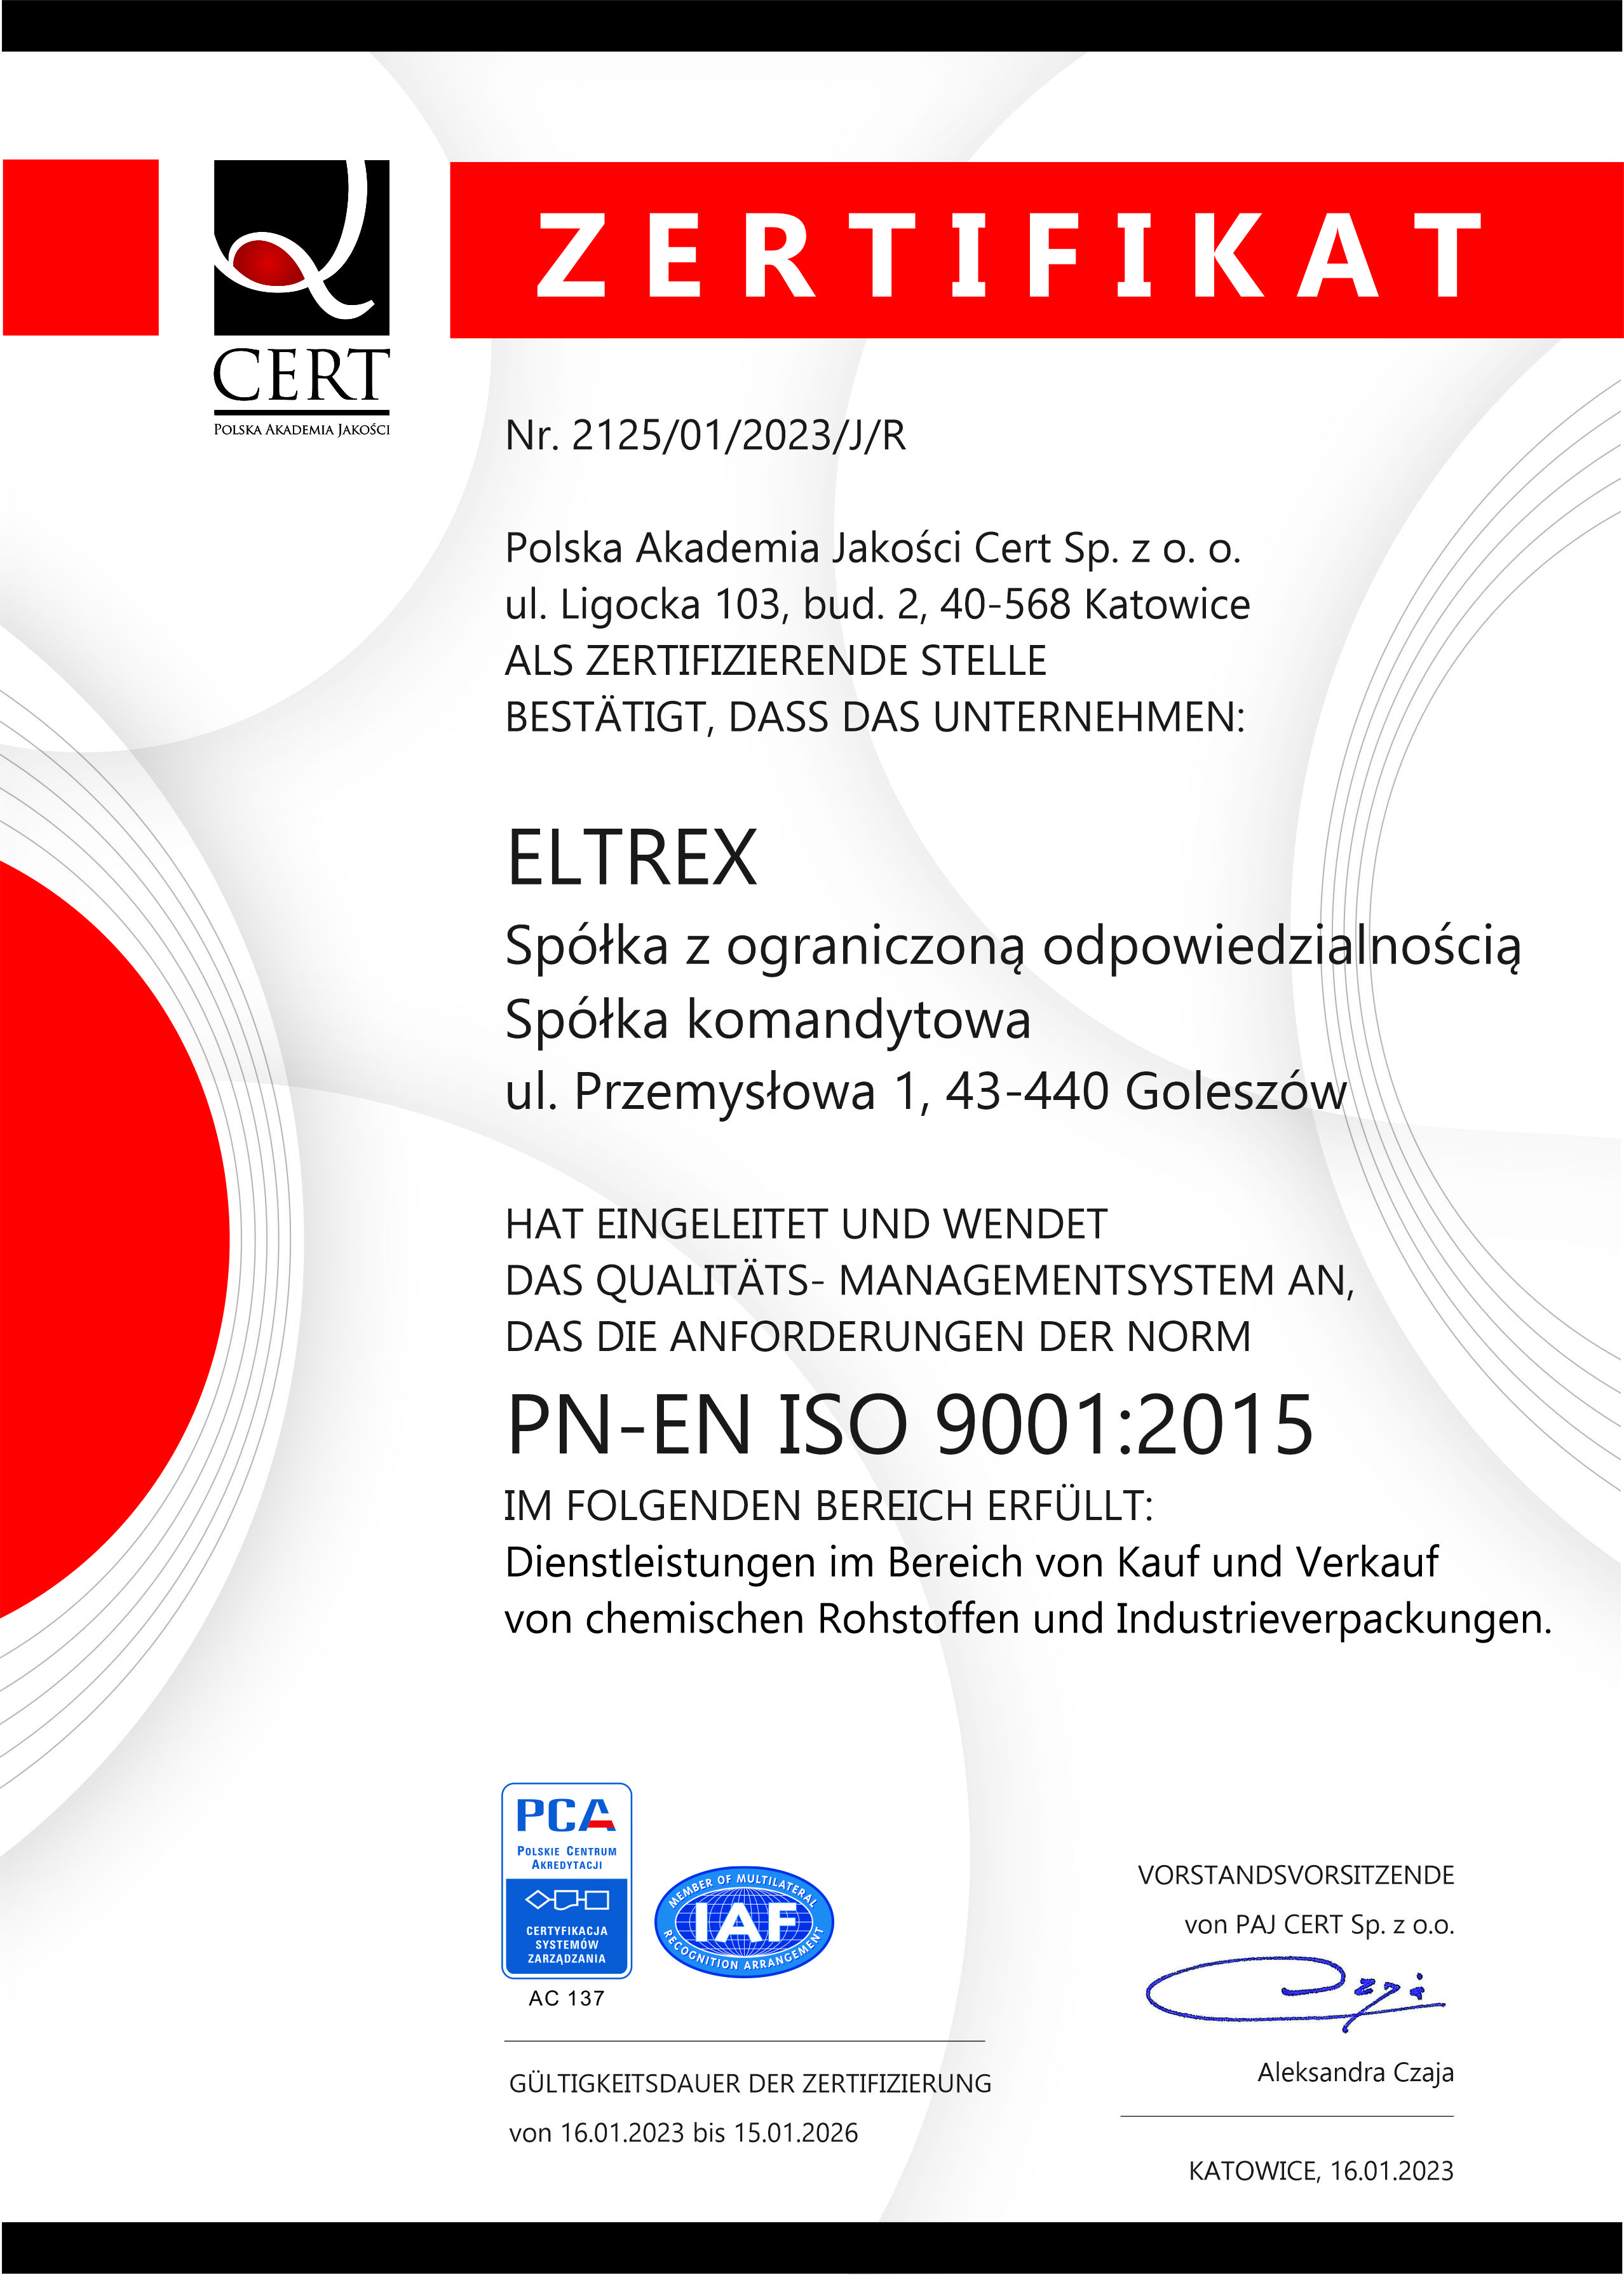 ISO 9001:2015 in Deutsch